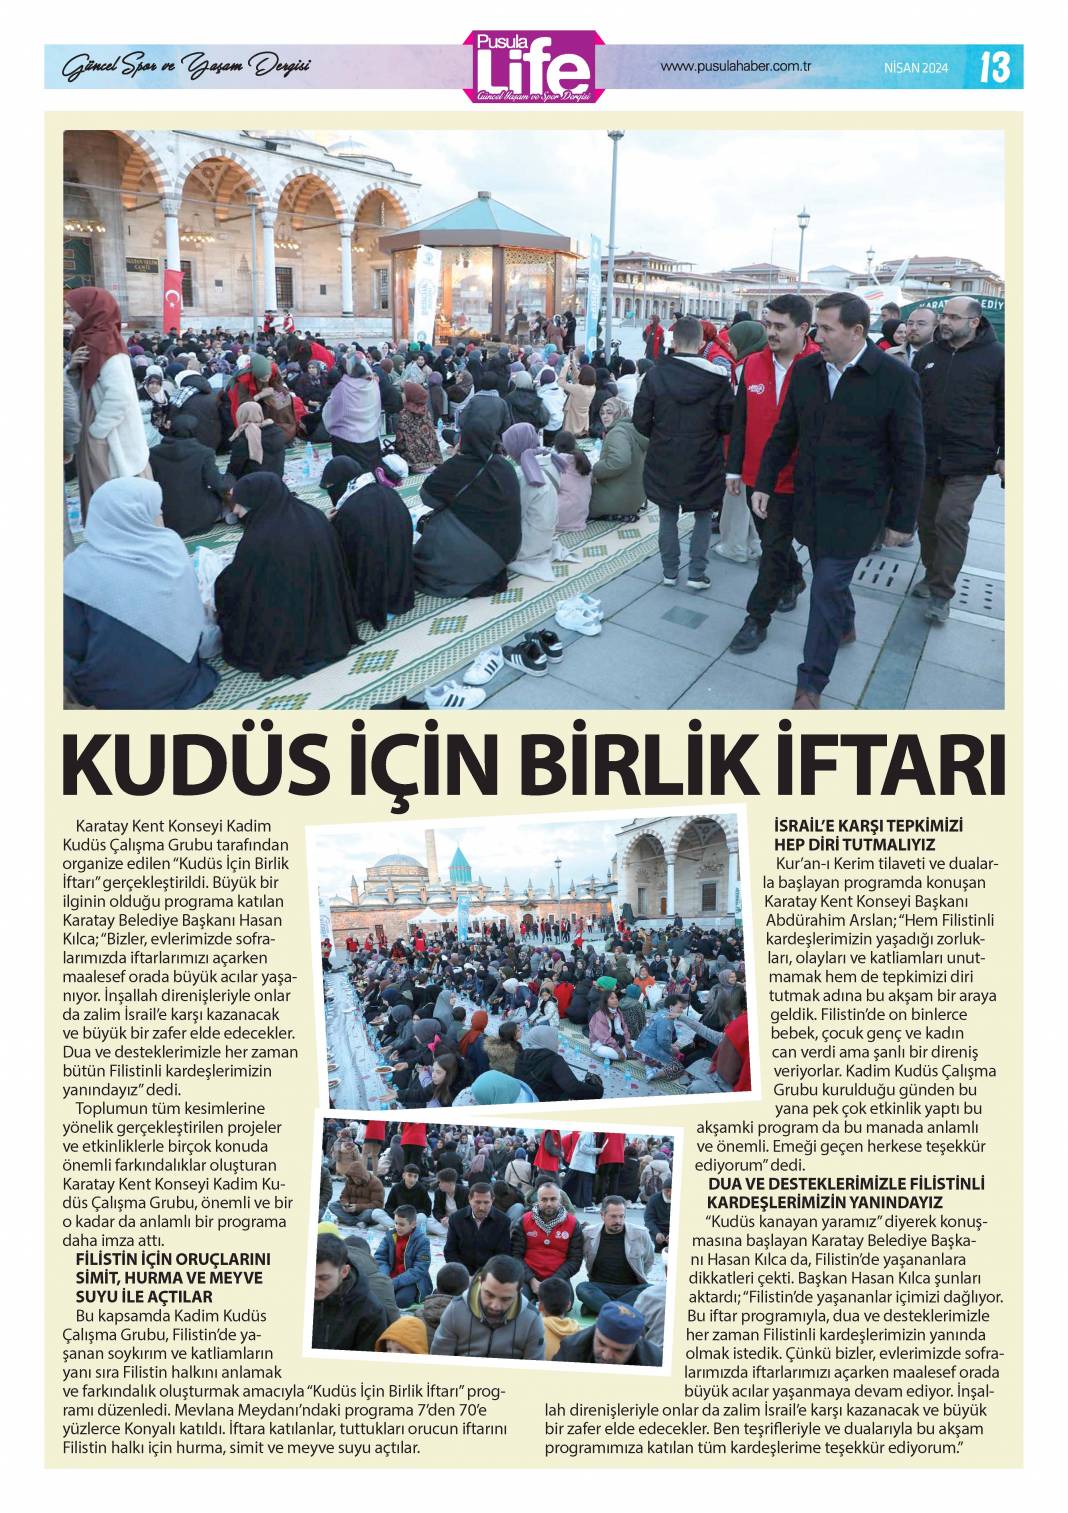 PS Life, Konya'daki Ramazan'ı yansıttı 13